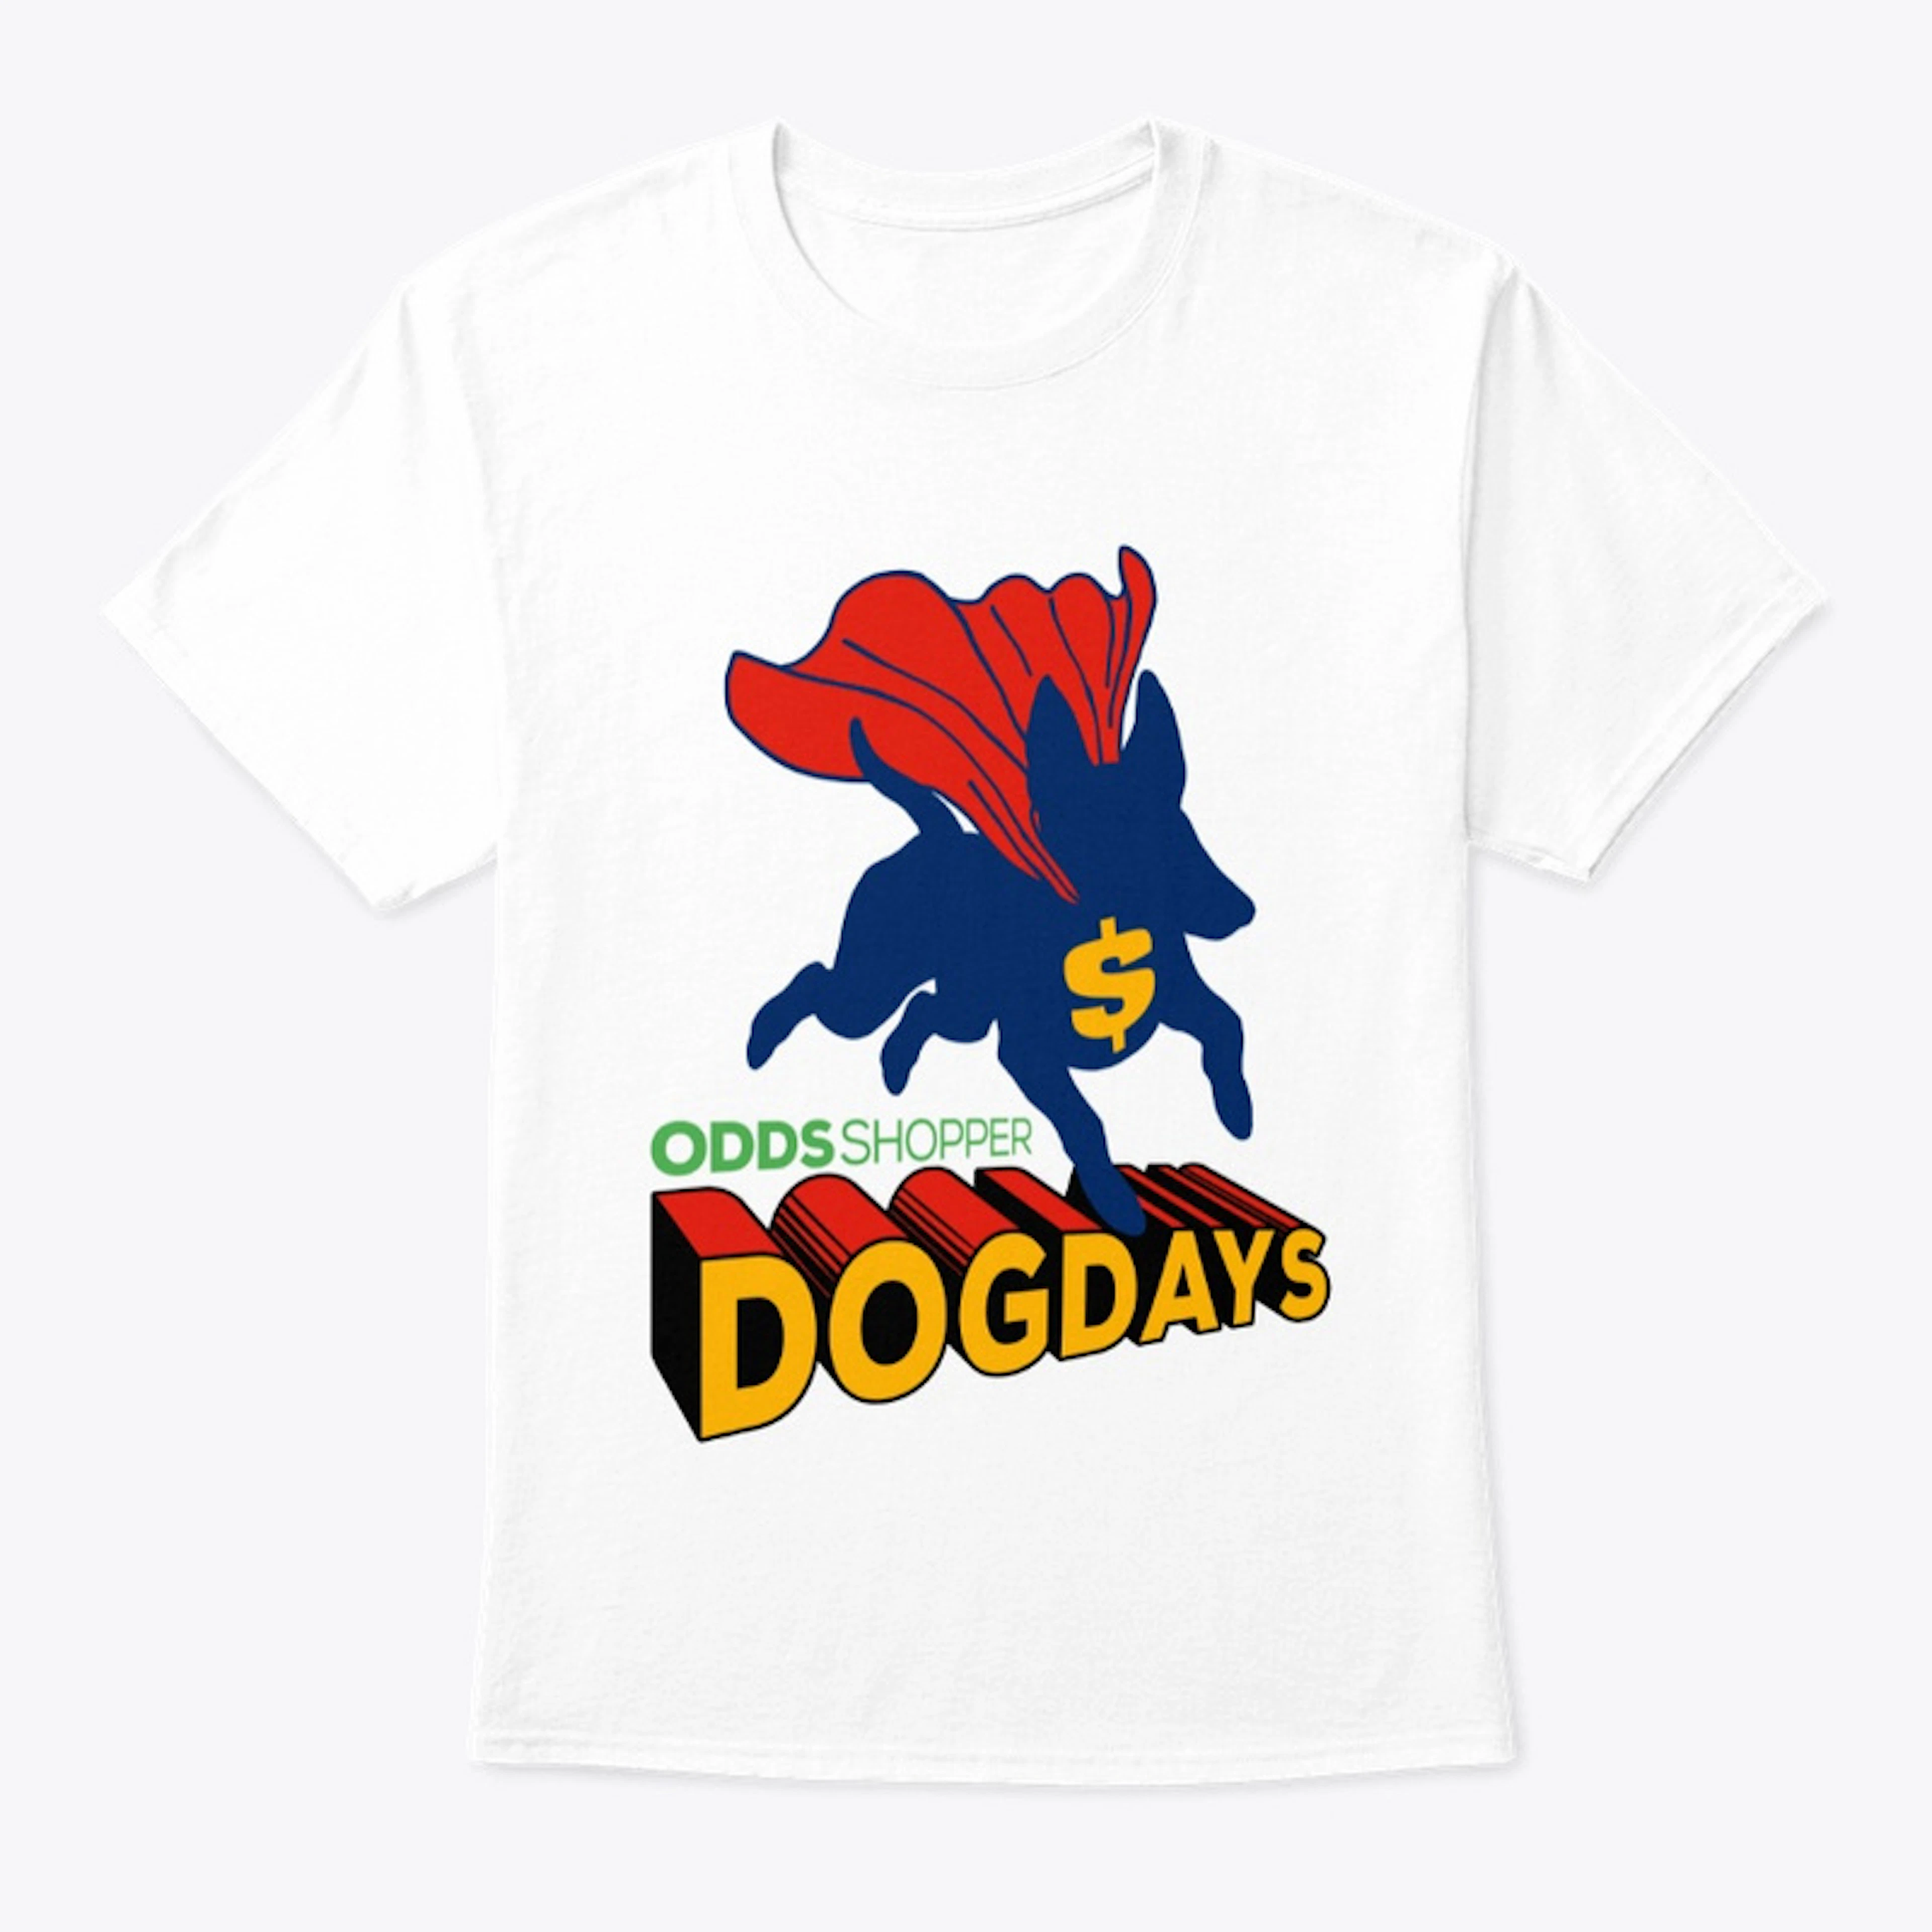 Dog Days Parlay - OddsShopper